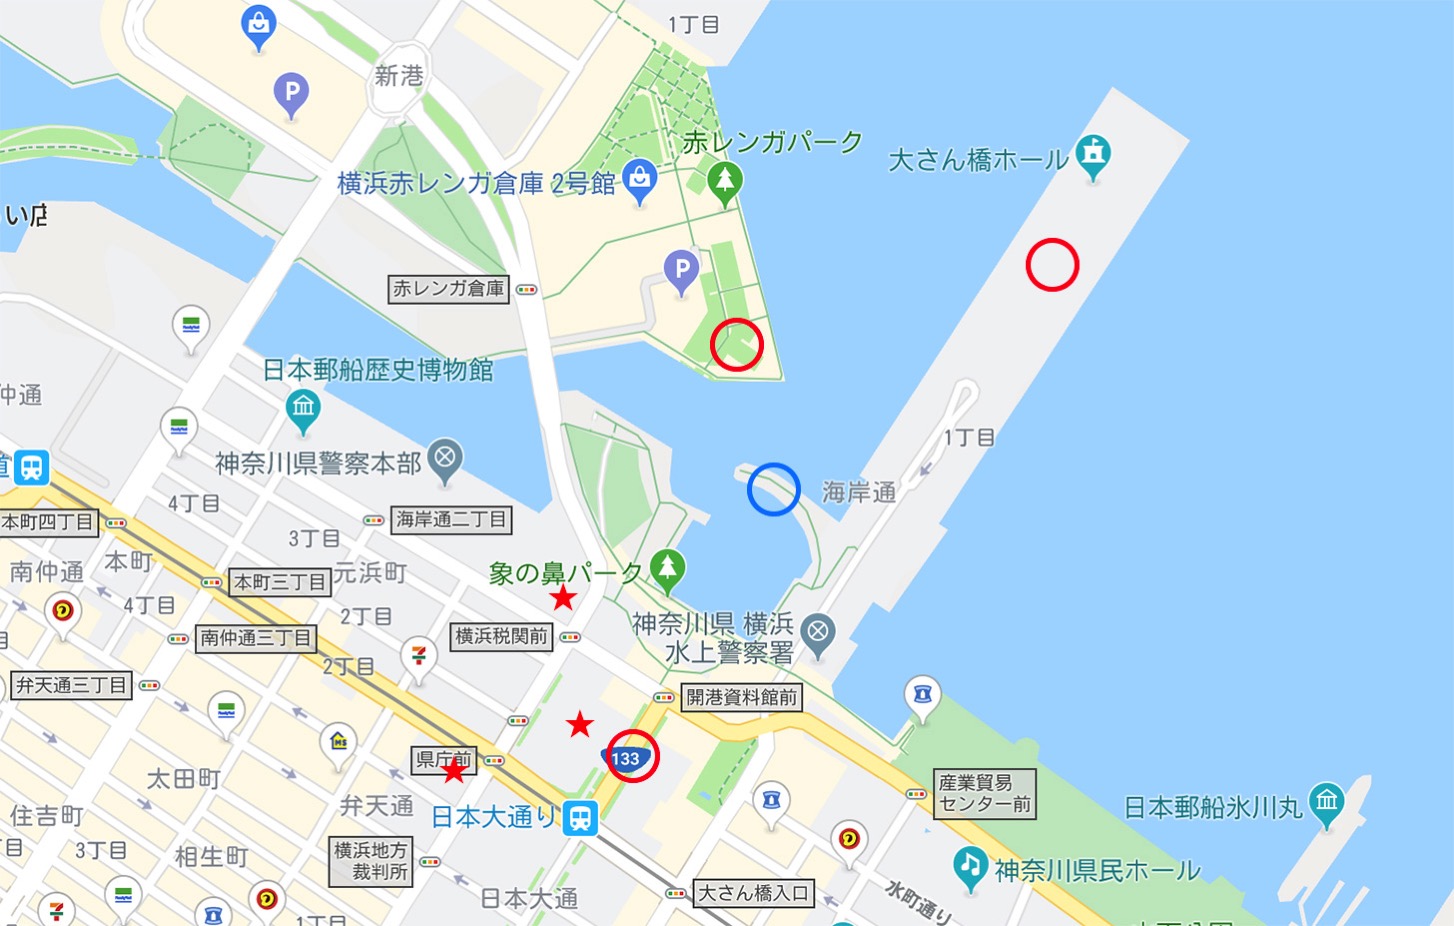 横浜三塔 位置関係とビュースポット